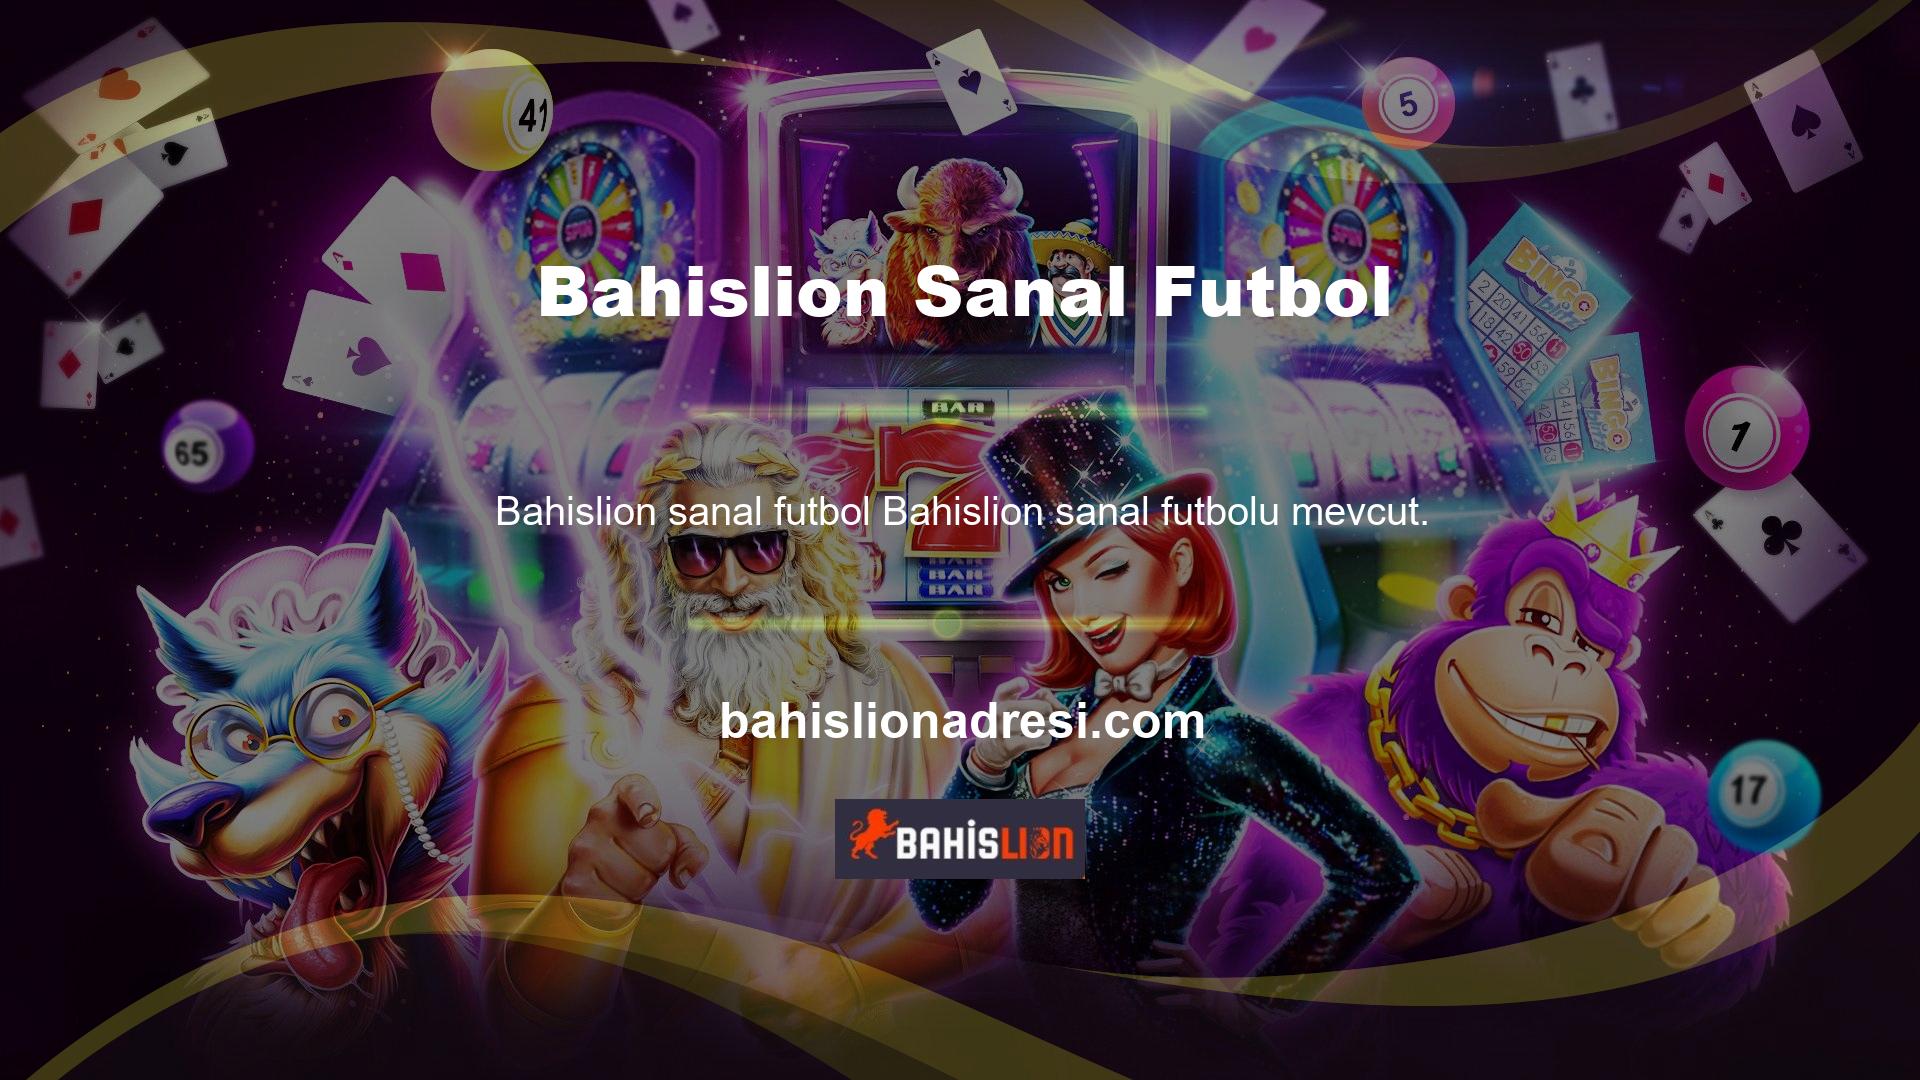 Yeni Bahislion adresi, gelir açısından en kazançlı sanal oyun sporu olan fantezi futbol için heyecan kaynağı